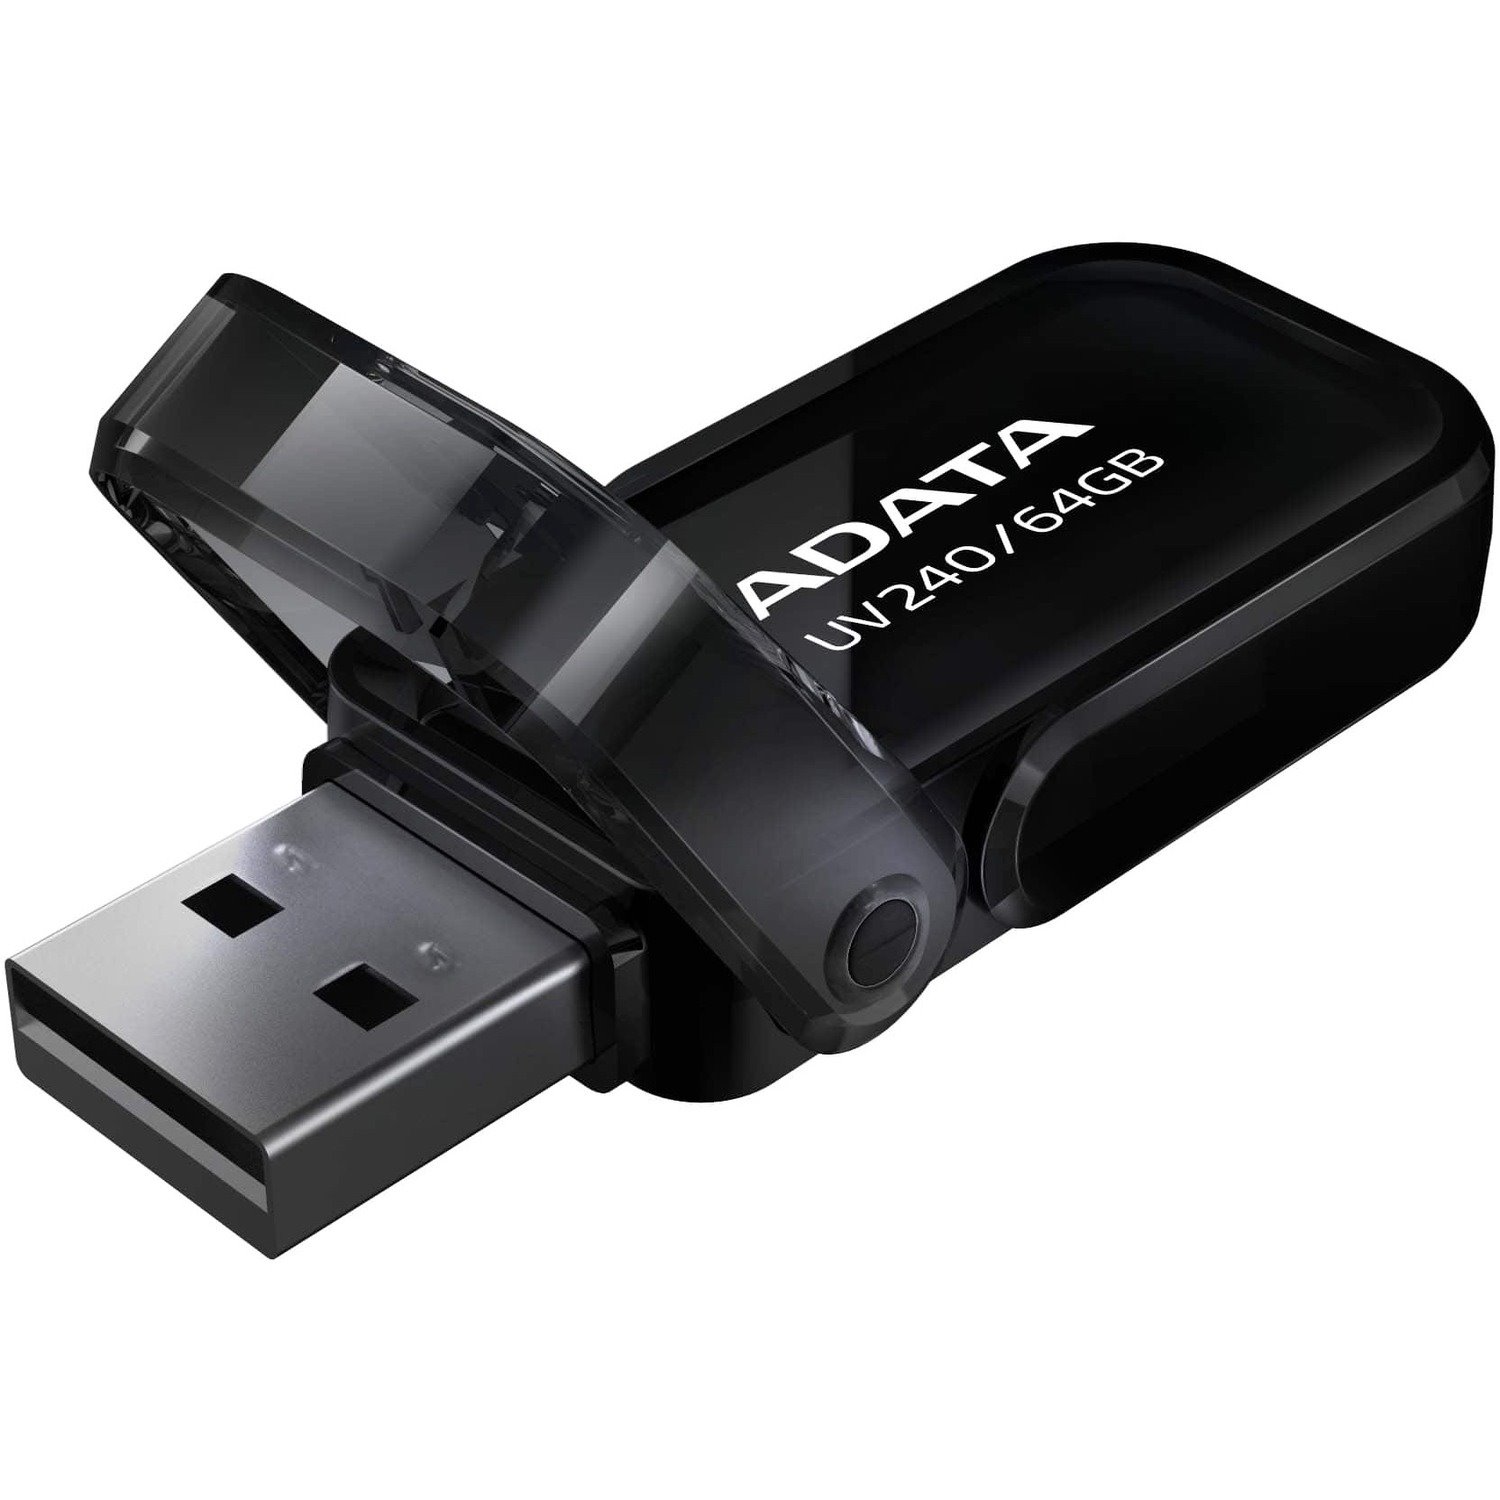 Adata Classic UV240 64GB USB 2.0 Flash Drive